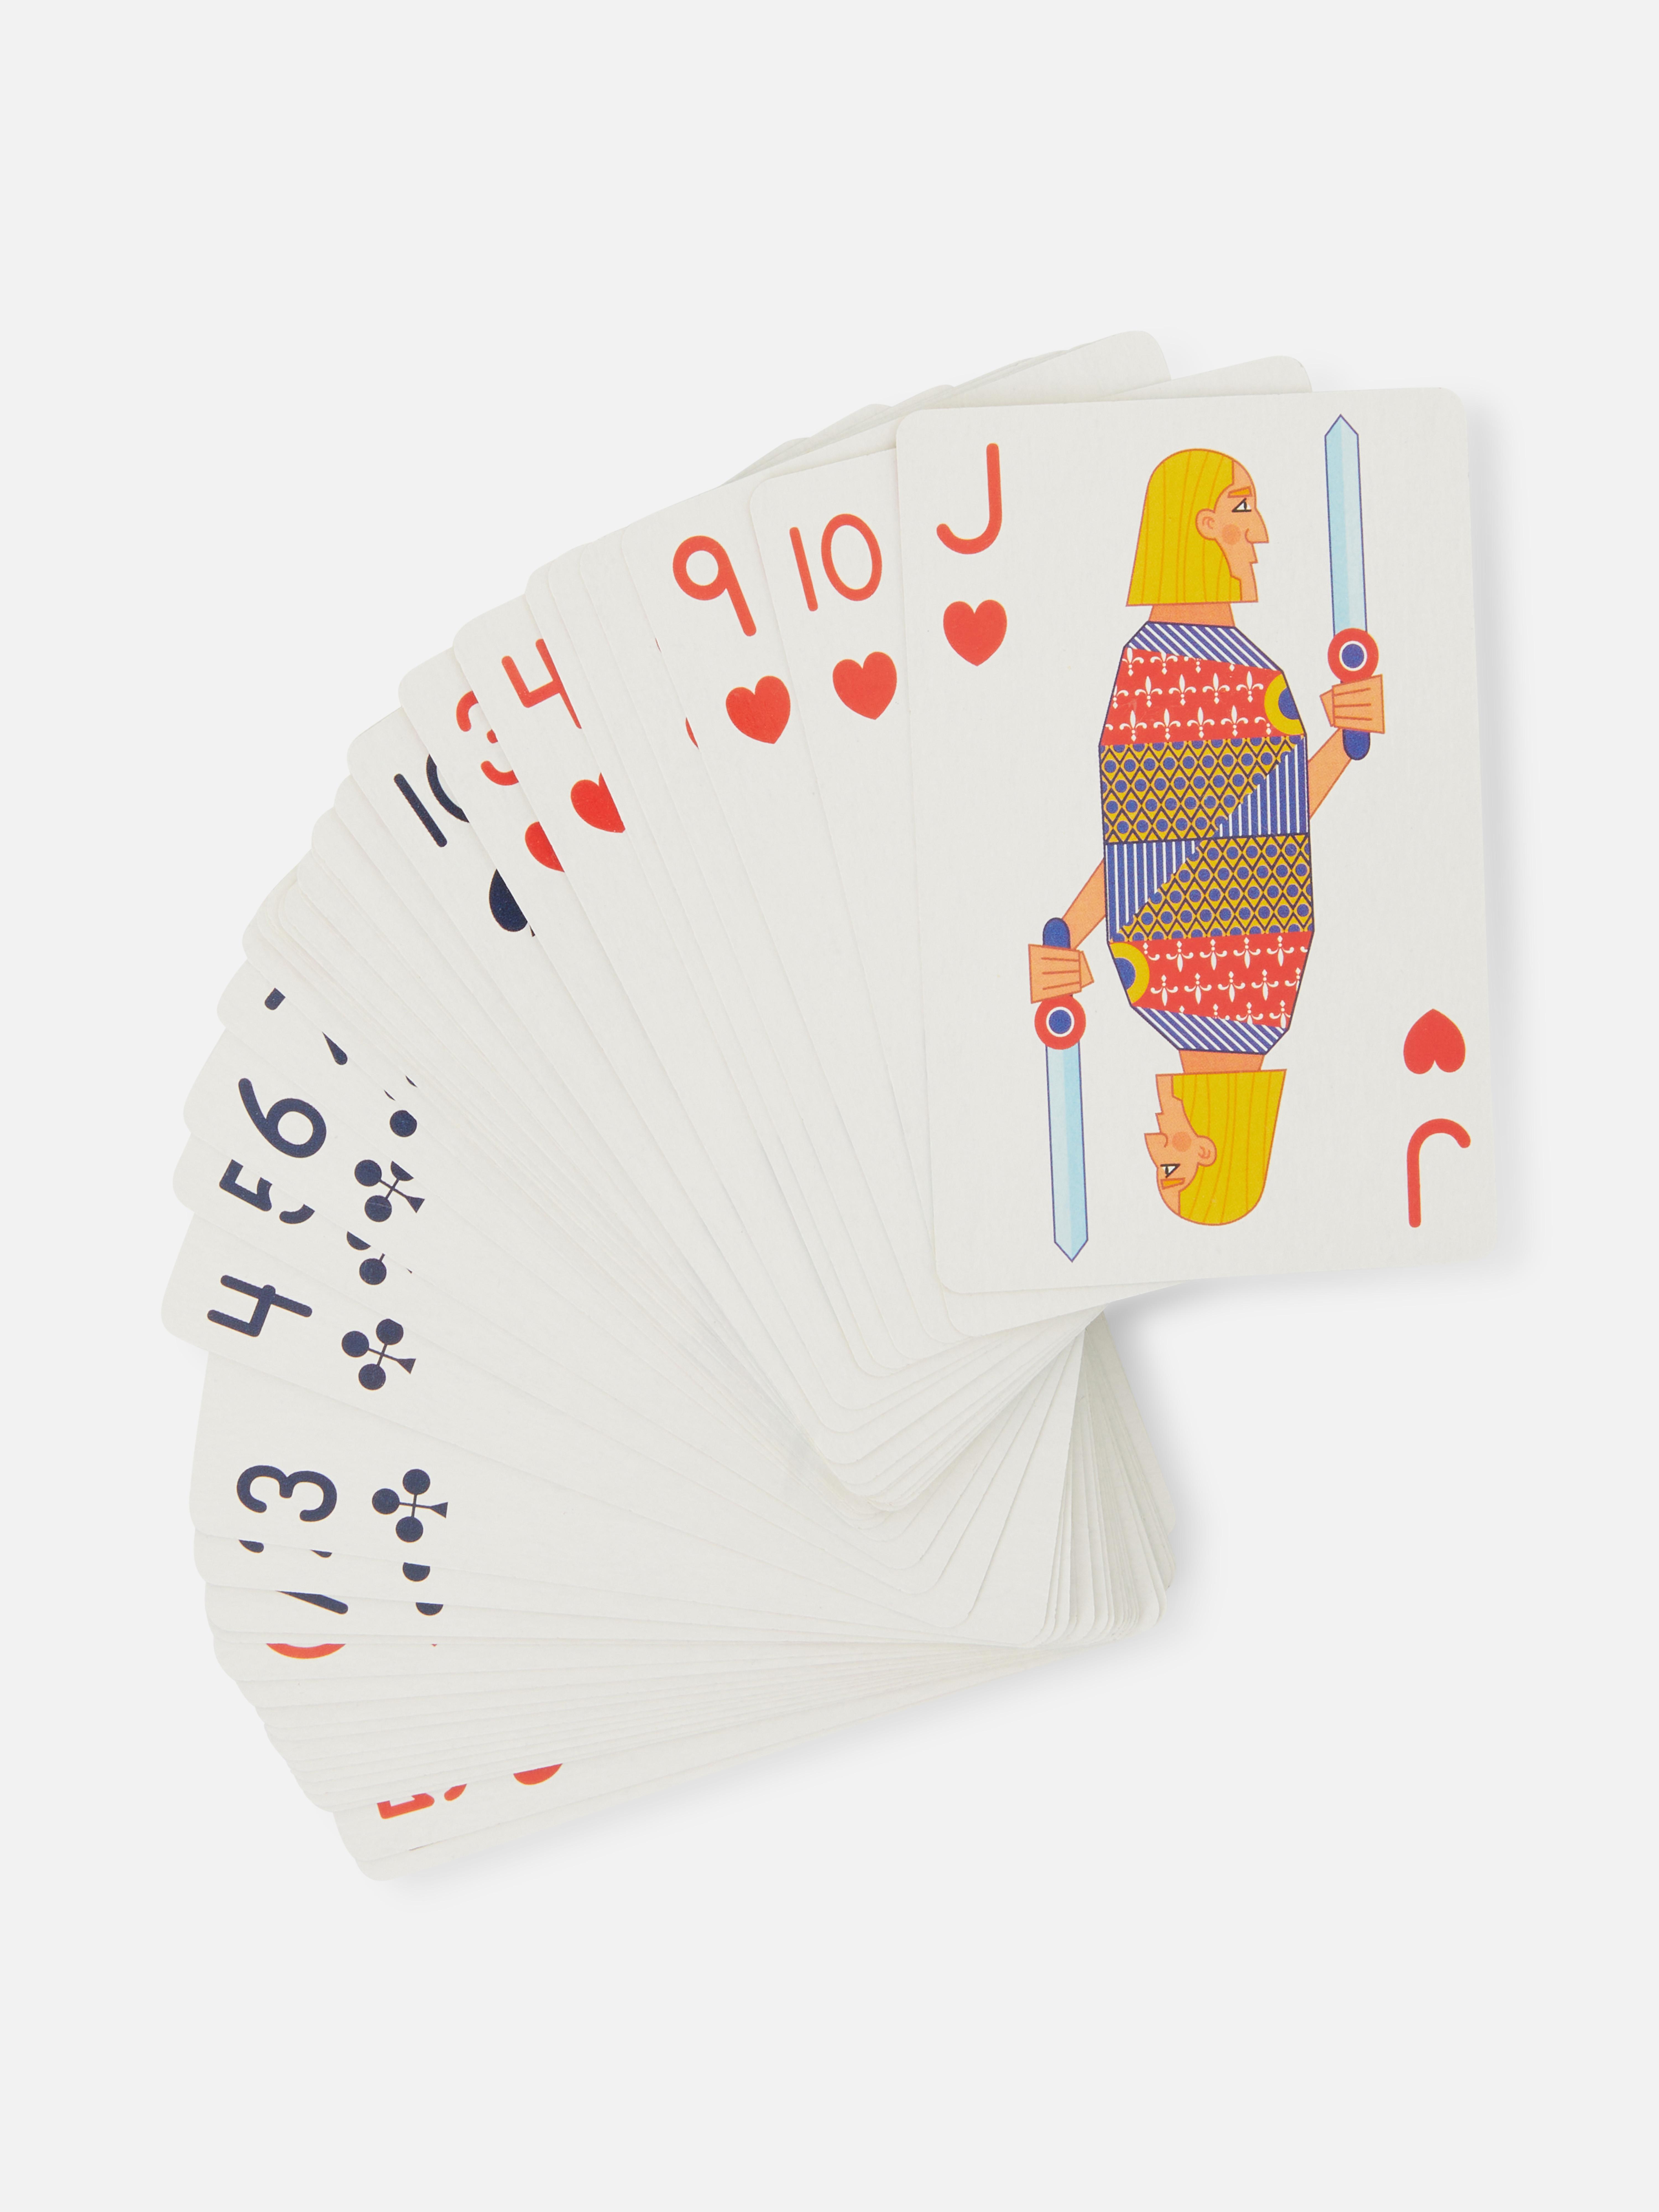 Klassisches Kartenspiel